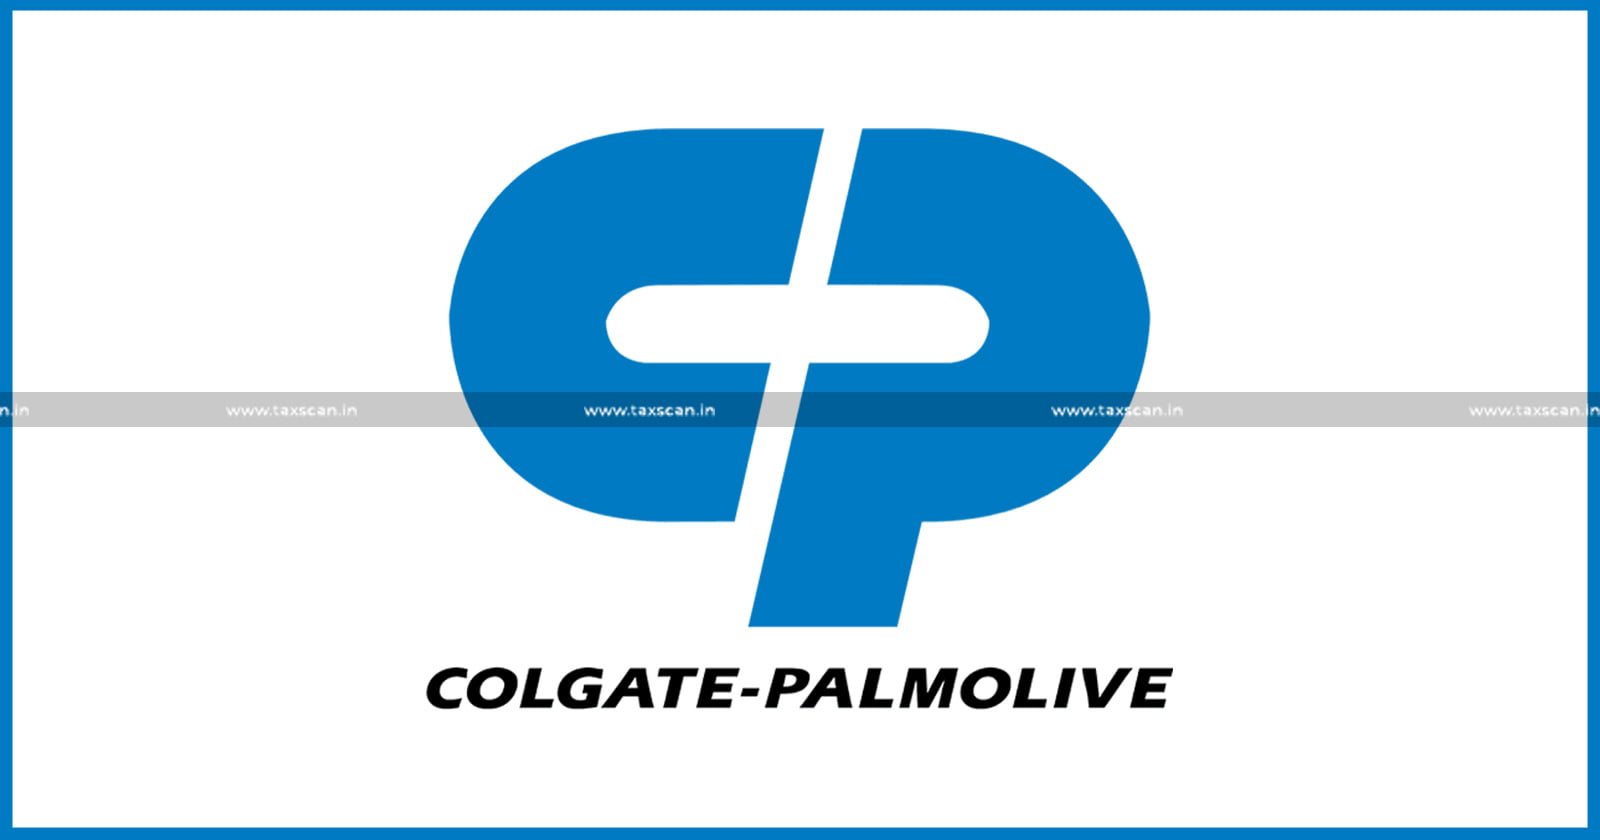 CA Vacancy - CA Vacancy in Colgate-Palmolive - Vacancy in Colgate-Palmolive - CA - Colgate-Palmolive - jobscan - taxscan